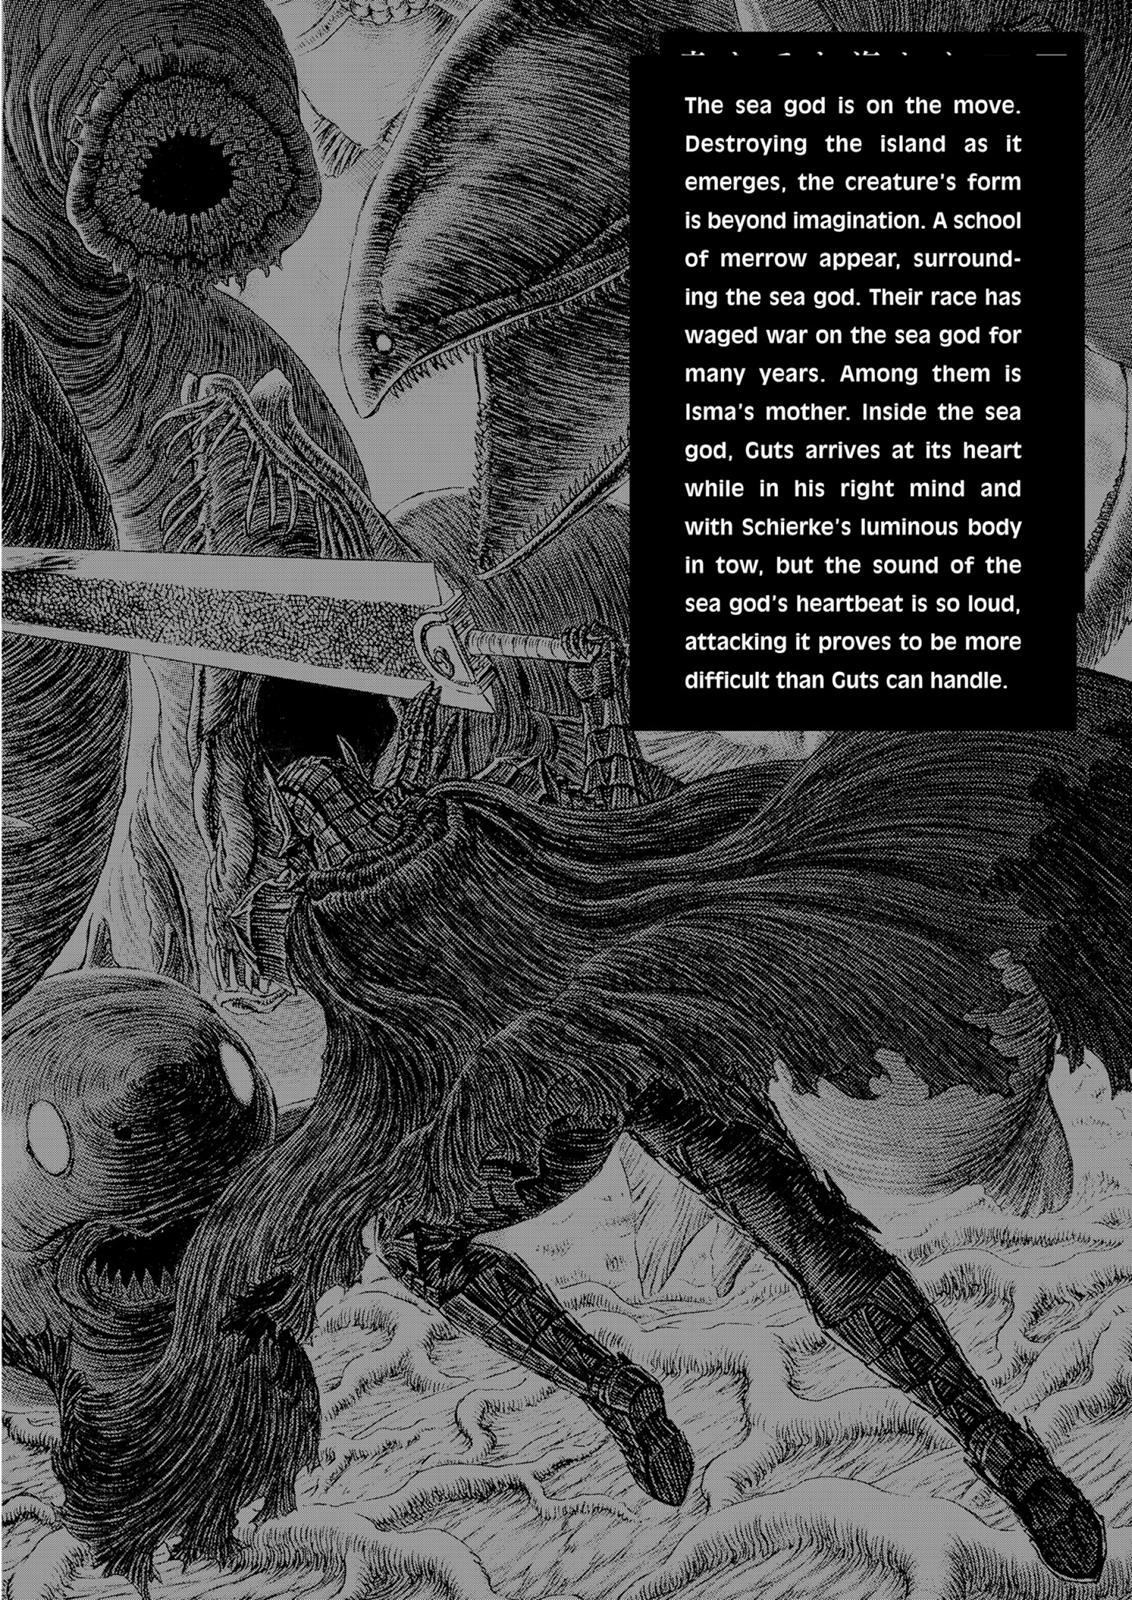 Berserk Manga Chapter 325 image 10